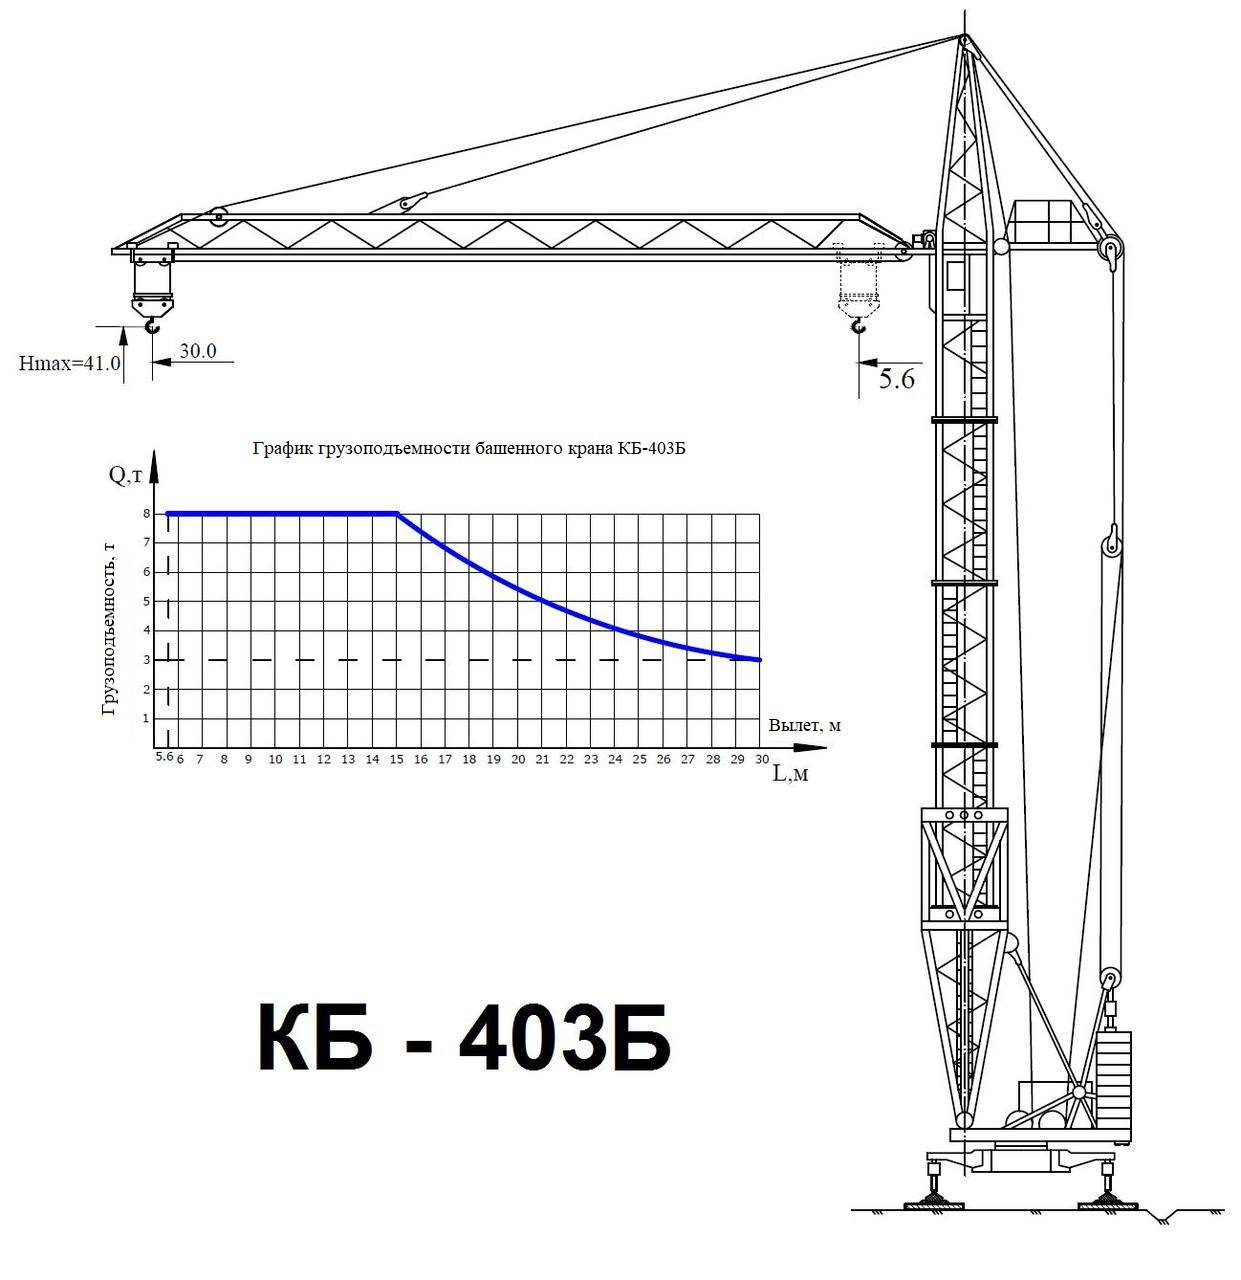 Кран башенный кб 408 технические характеристики - спецтехника от а до я.